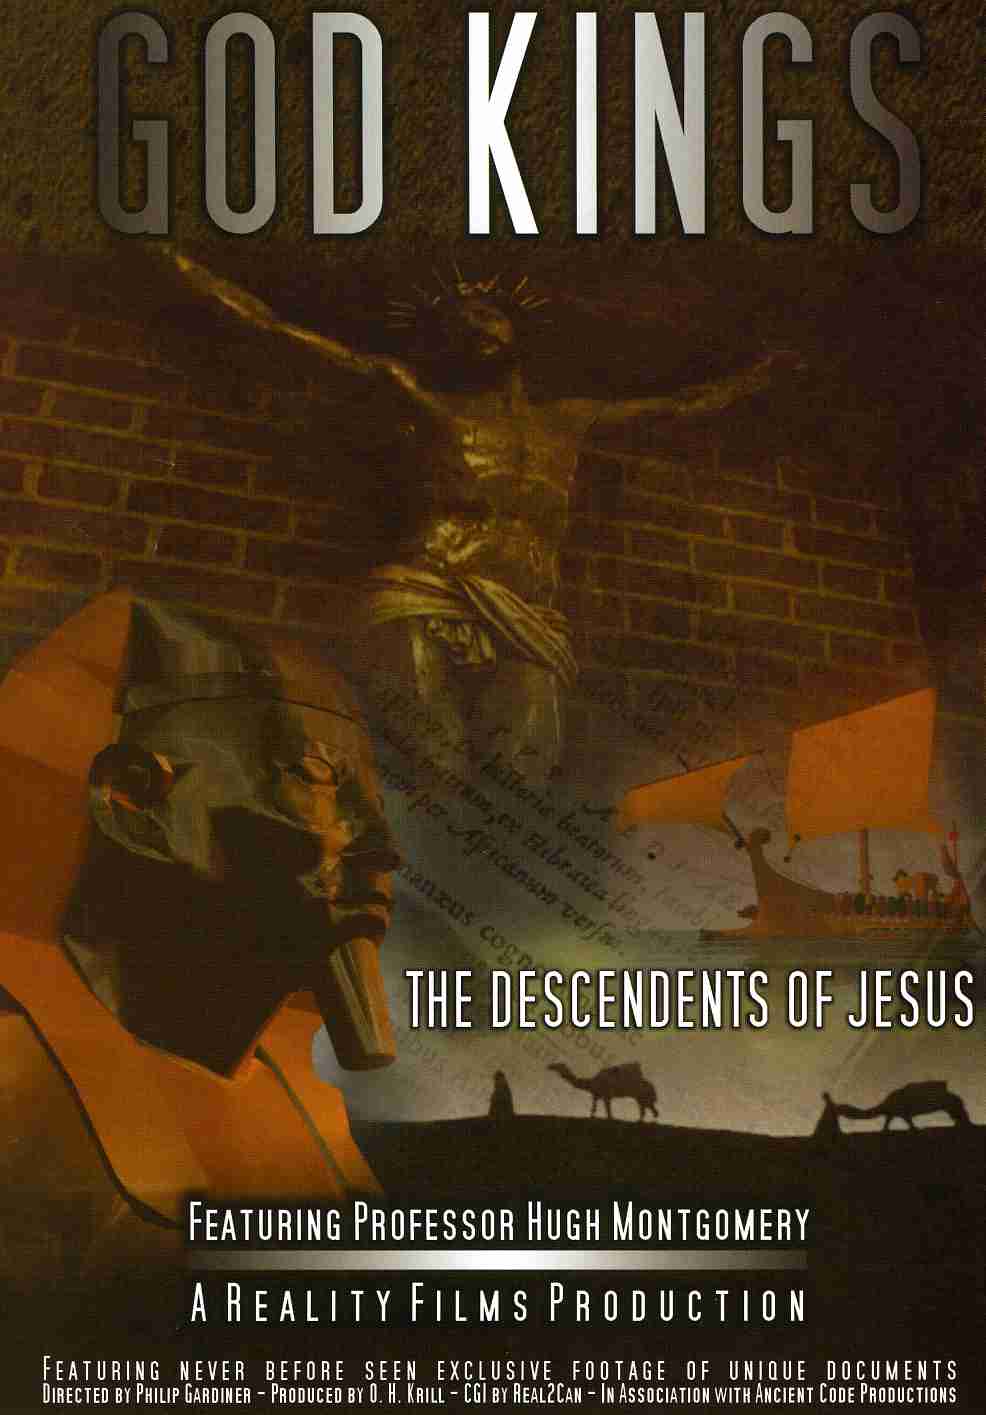 GOD KINGS: DESCENDENTS OF JESUS